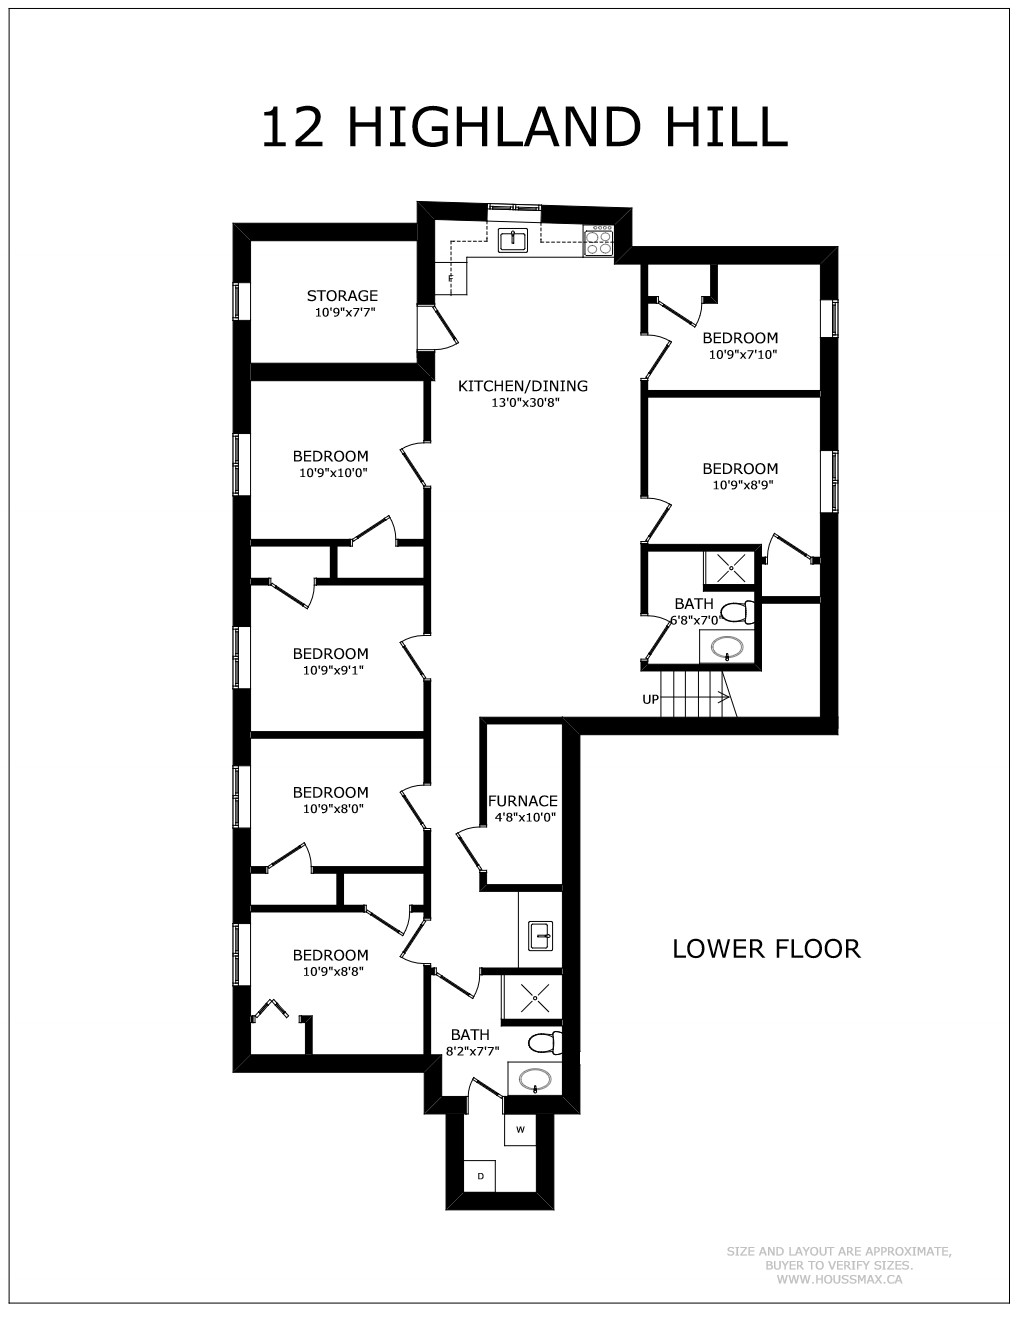 12 Highland Hill Floor Plan - Basement